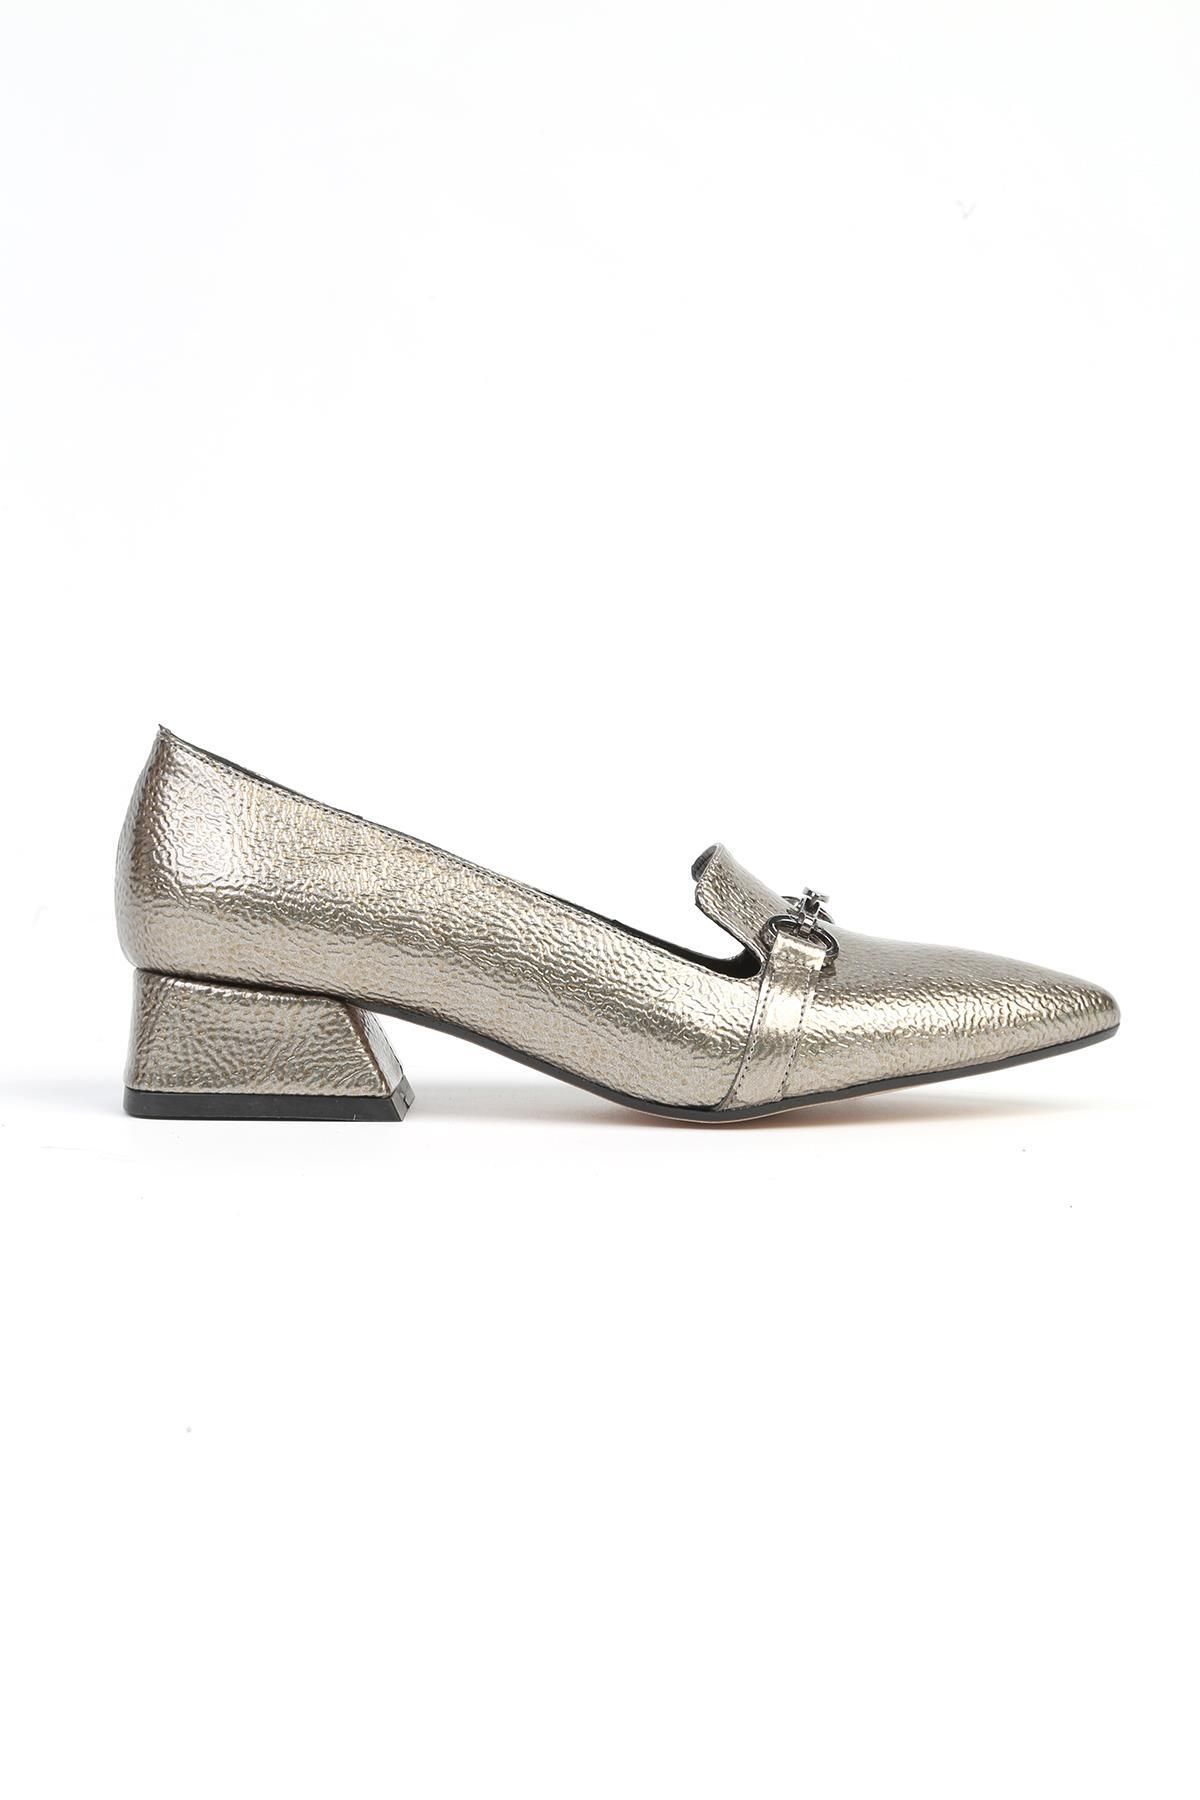 Pierre Cardin ® | PC-52567 - 3478 Platin Kırısık - Kadın Topuklu Ayakkabı